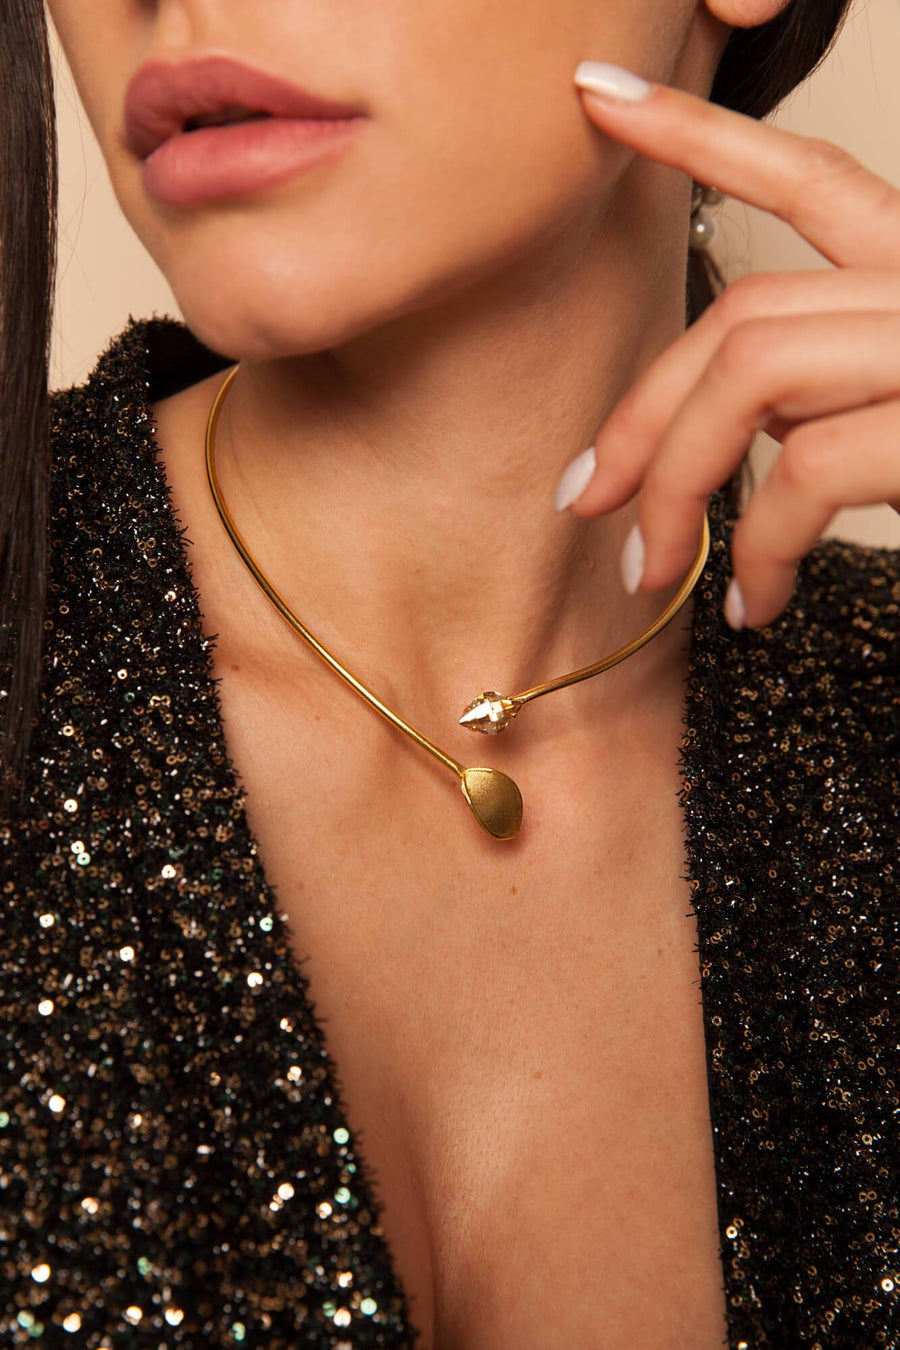 Diana collar necklace with swarovsky elements greek handmade jewelry